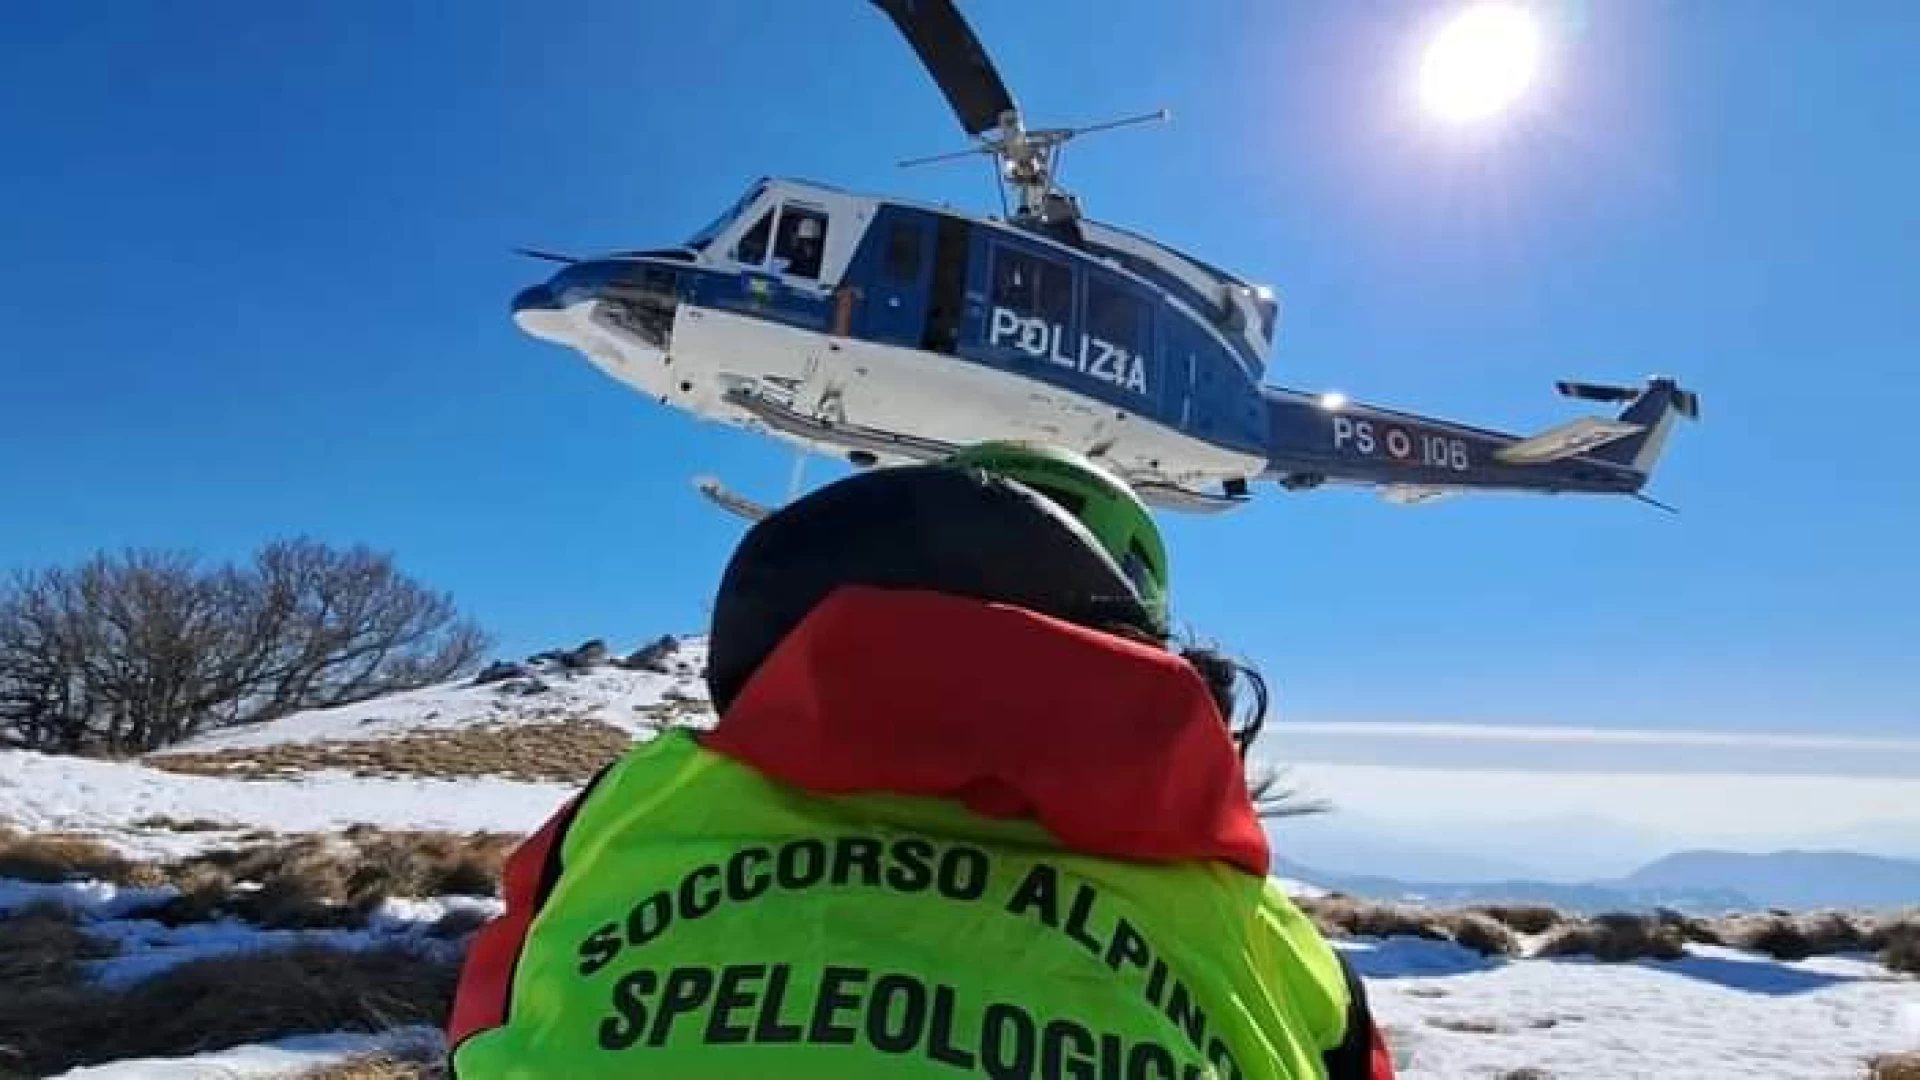 Interventi di soccorso in ambiente montano, questa mattina l’esercitazione del Corpo nazionale Alpino e Speleologico a Capracotta.